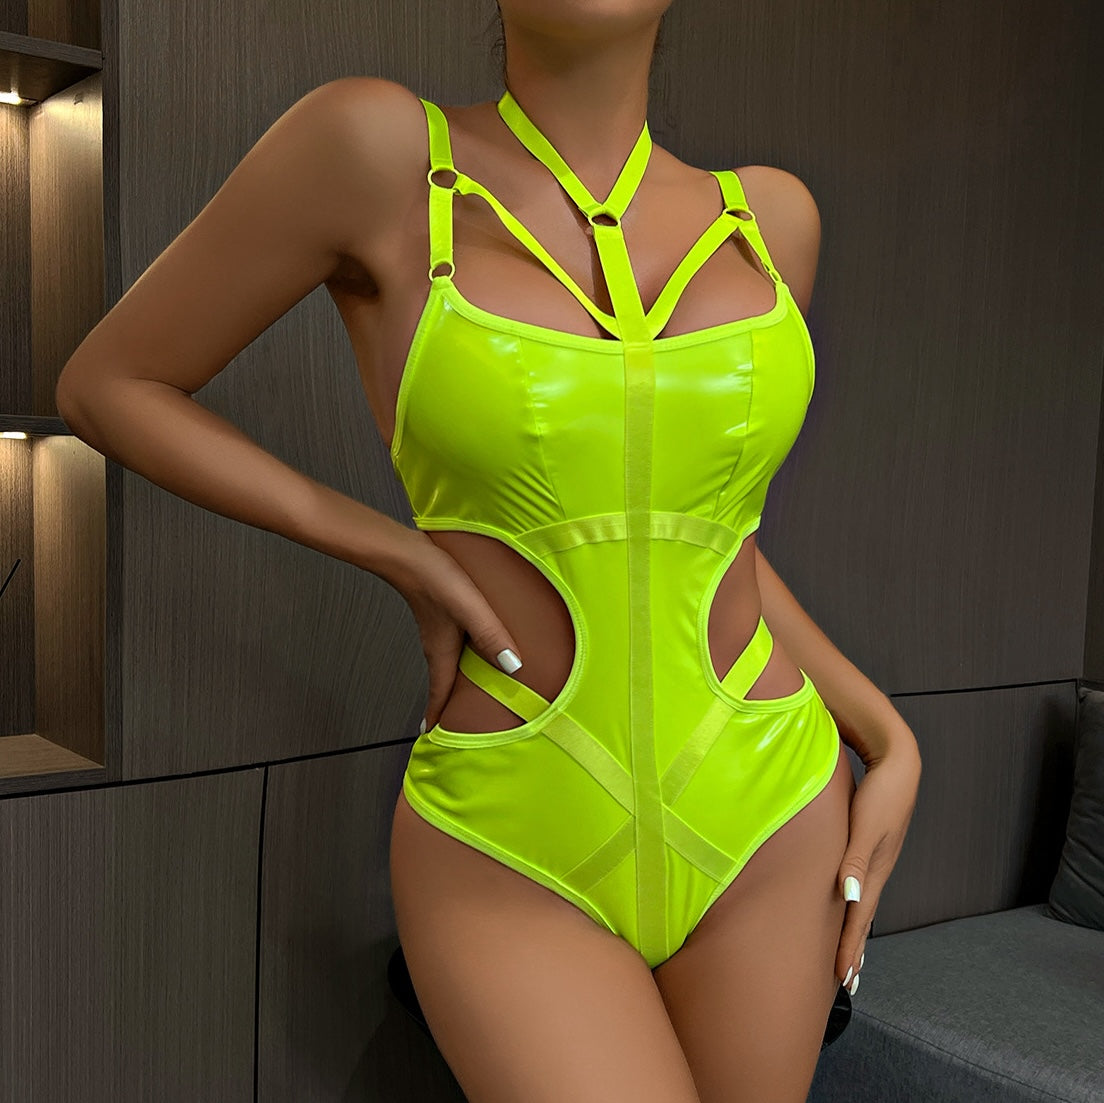 Sissy in Green Sexy Latex Teddy Lingerie - Femboy Fashion